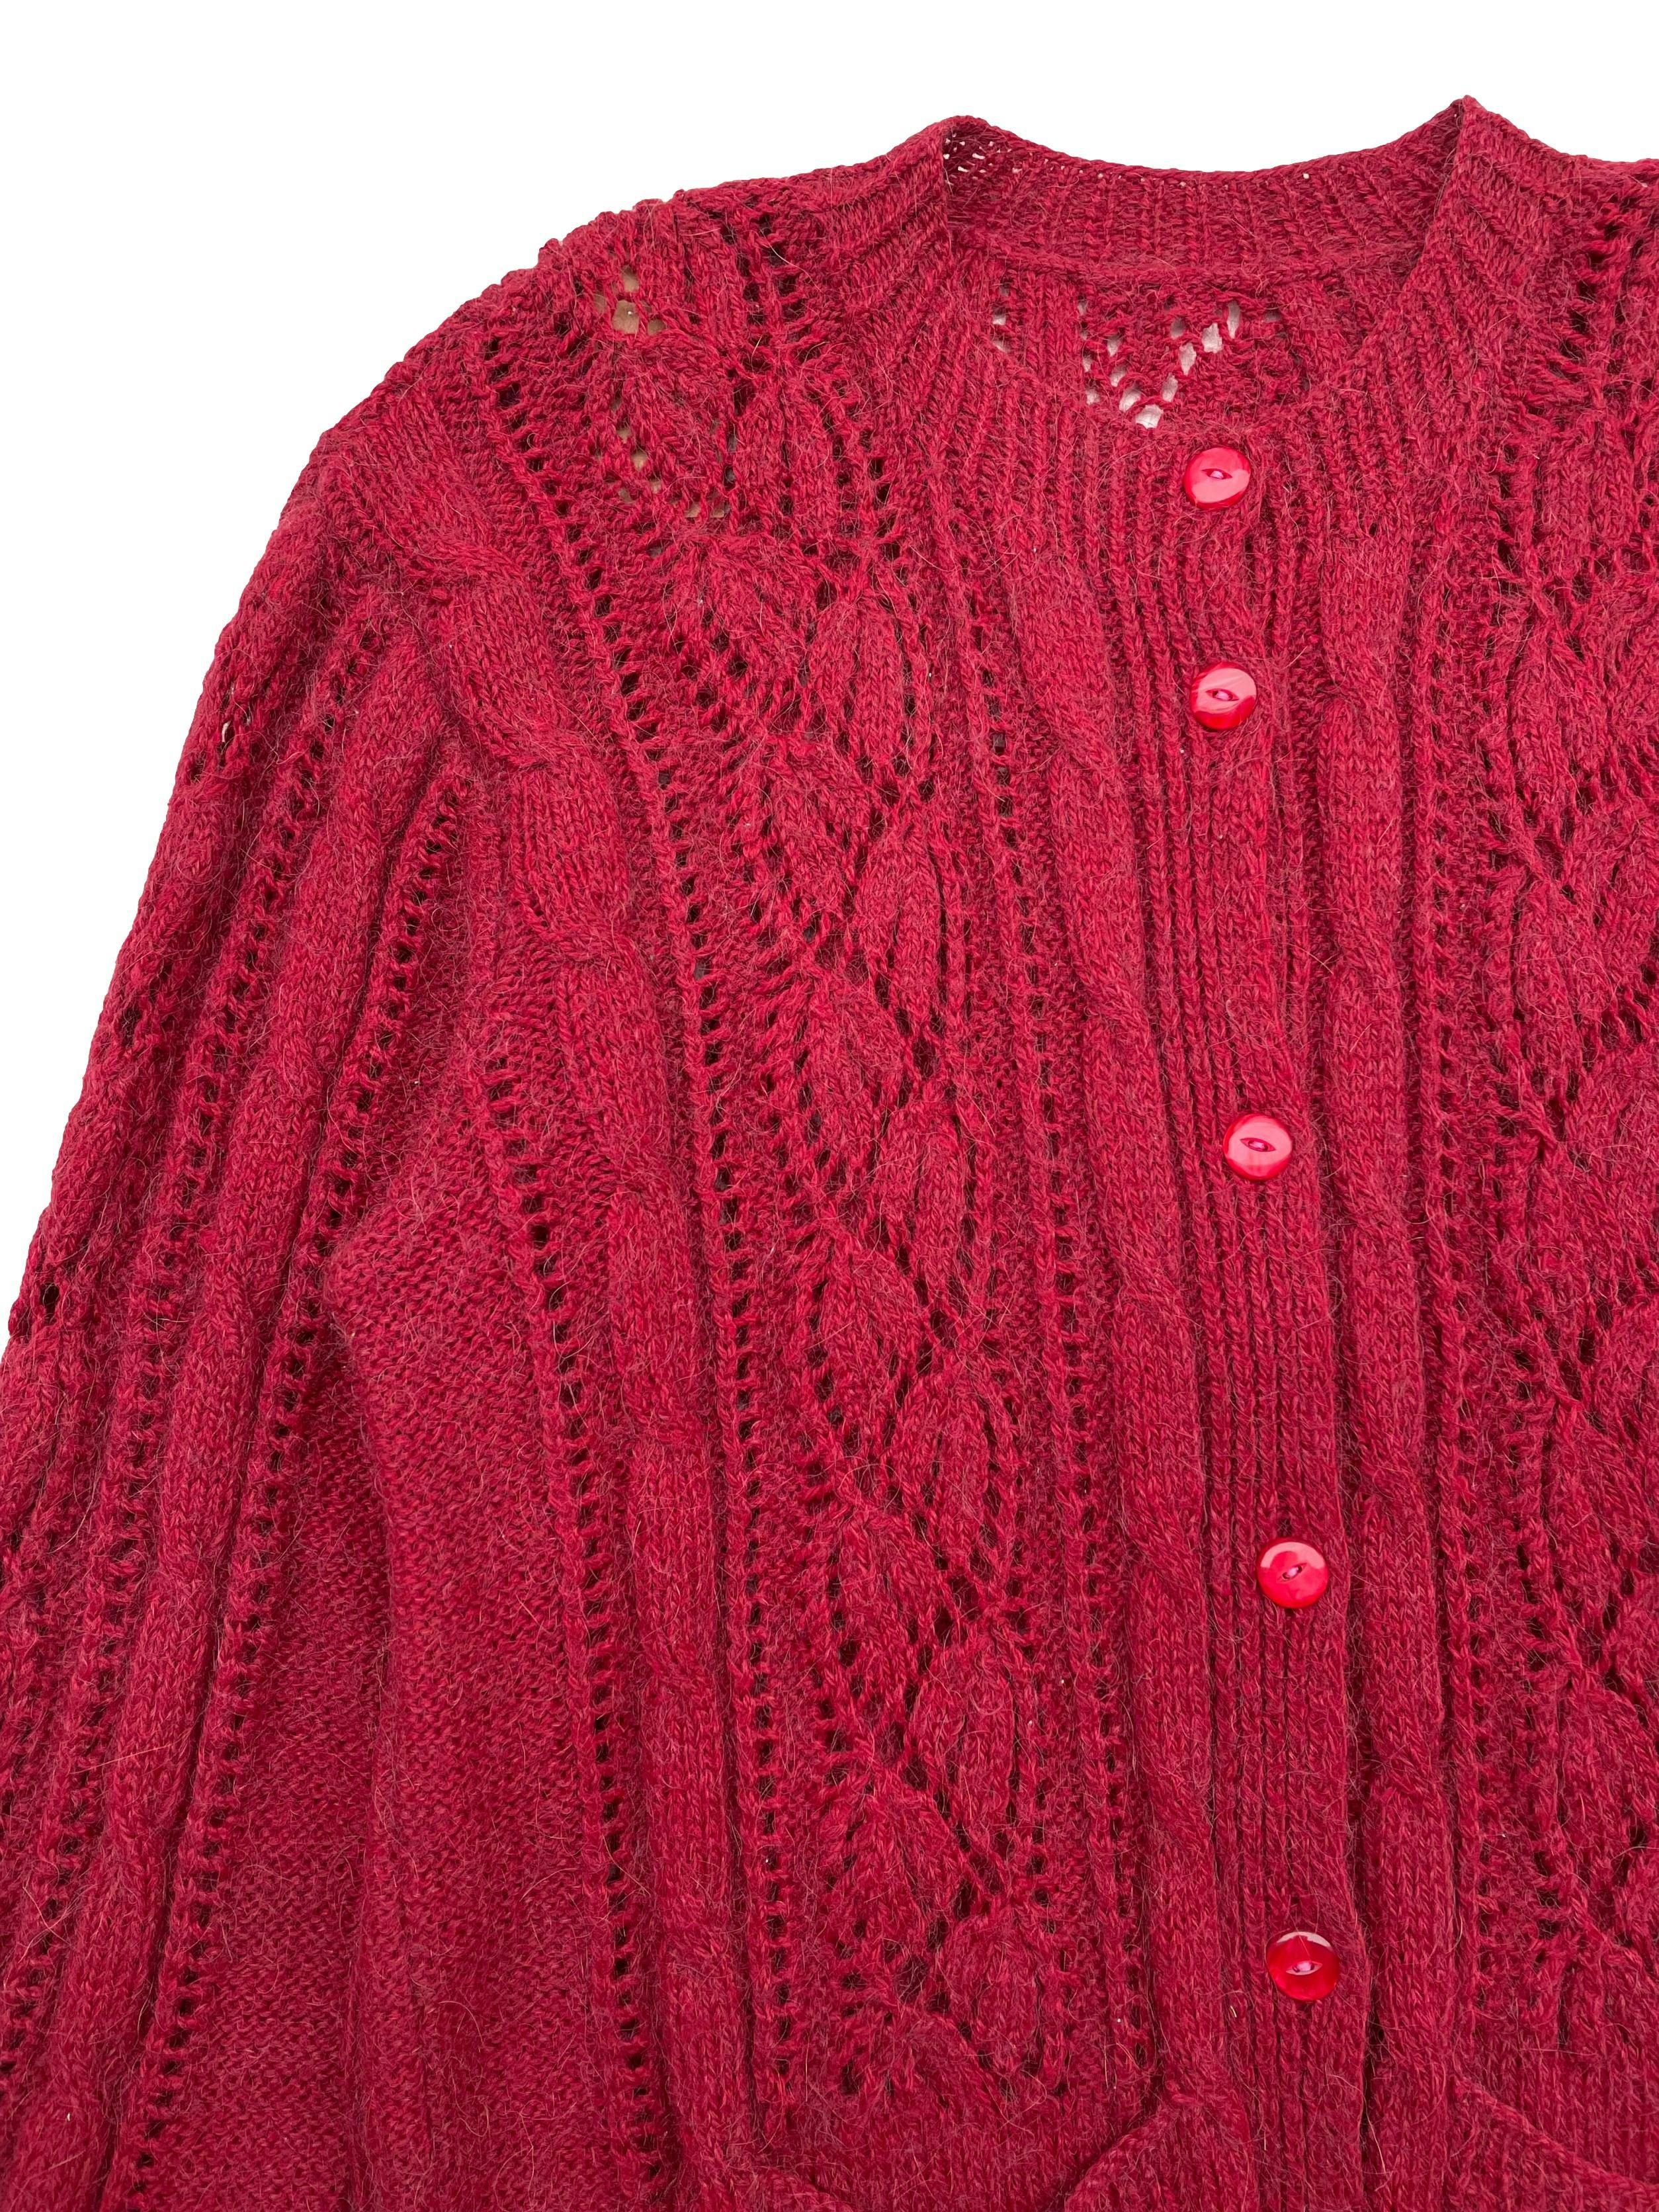 Cárdigan rojo vino vintage, tejido calado , con bolsillos y botones a tono. Largo 70cm.